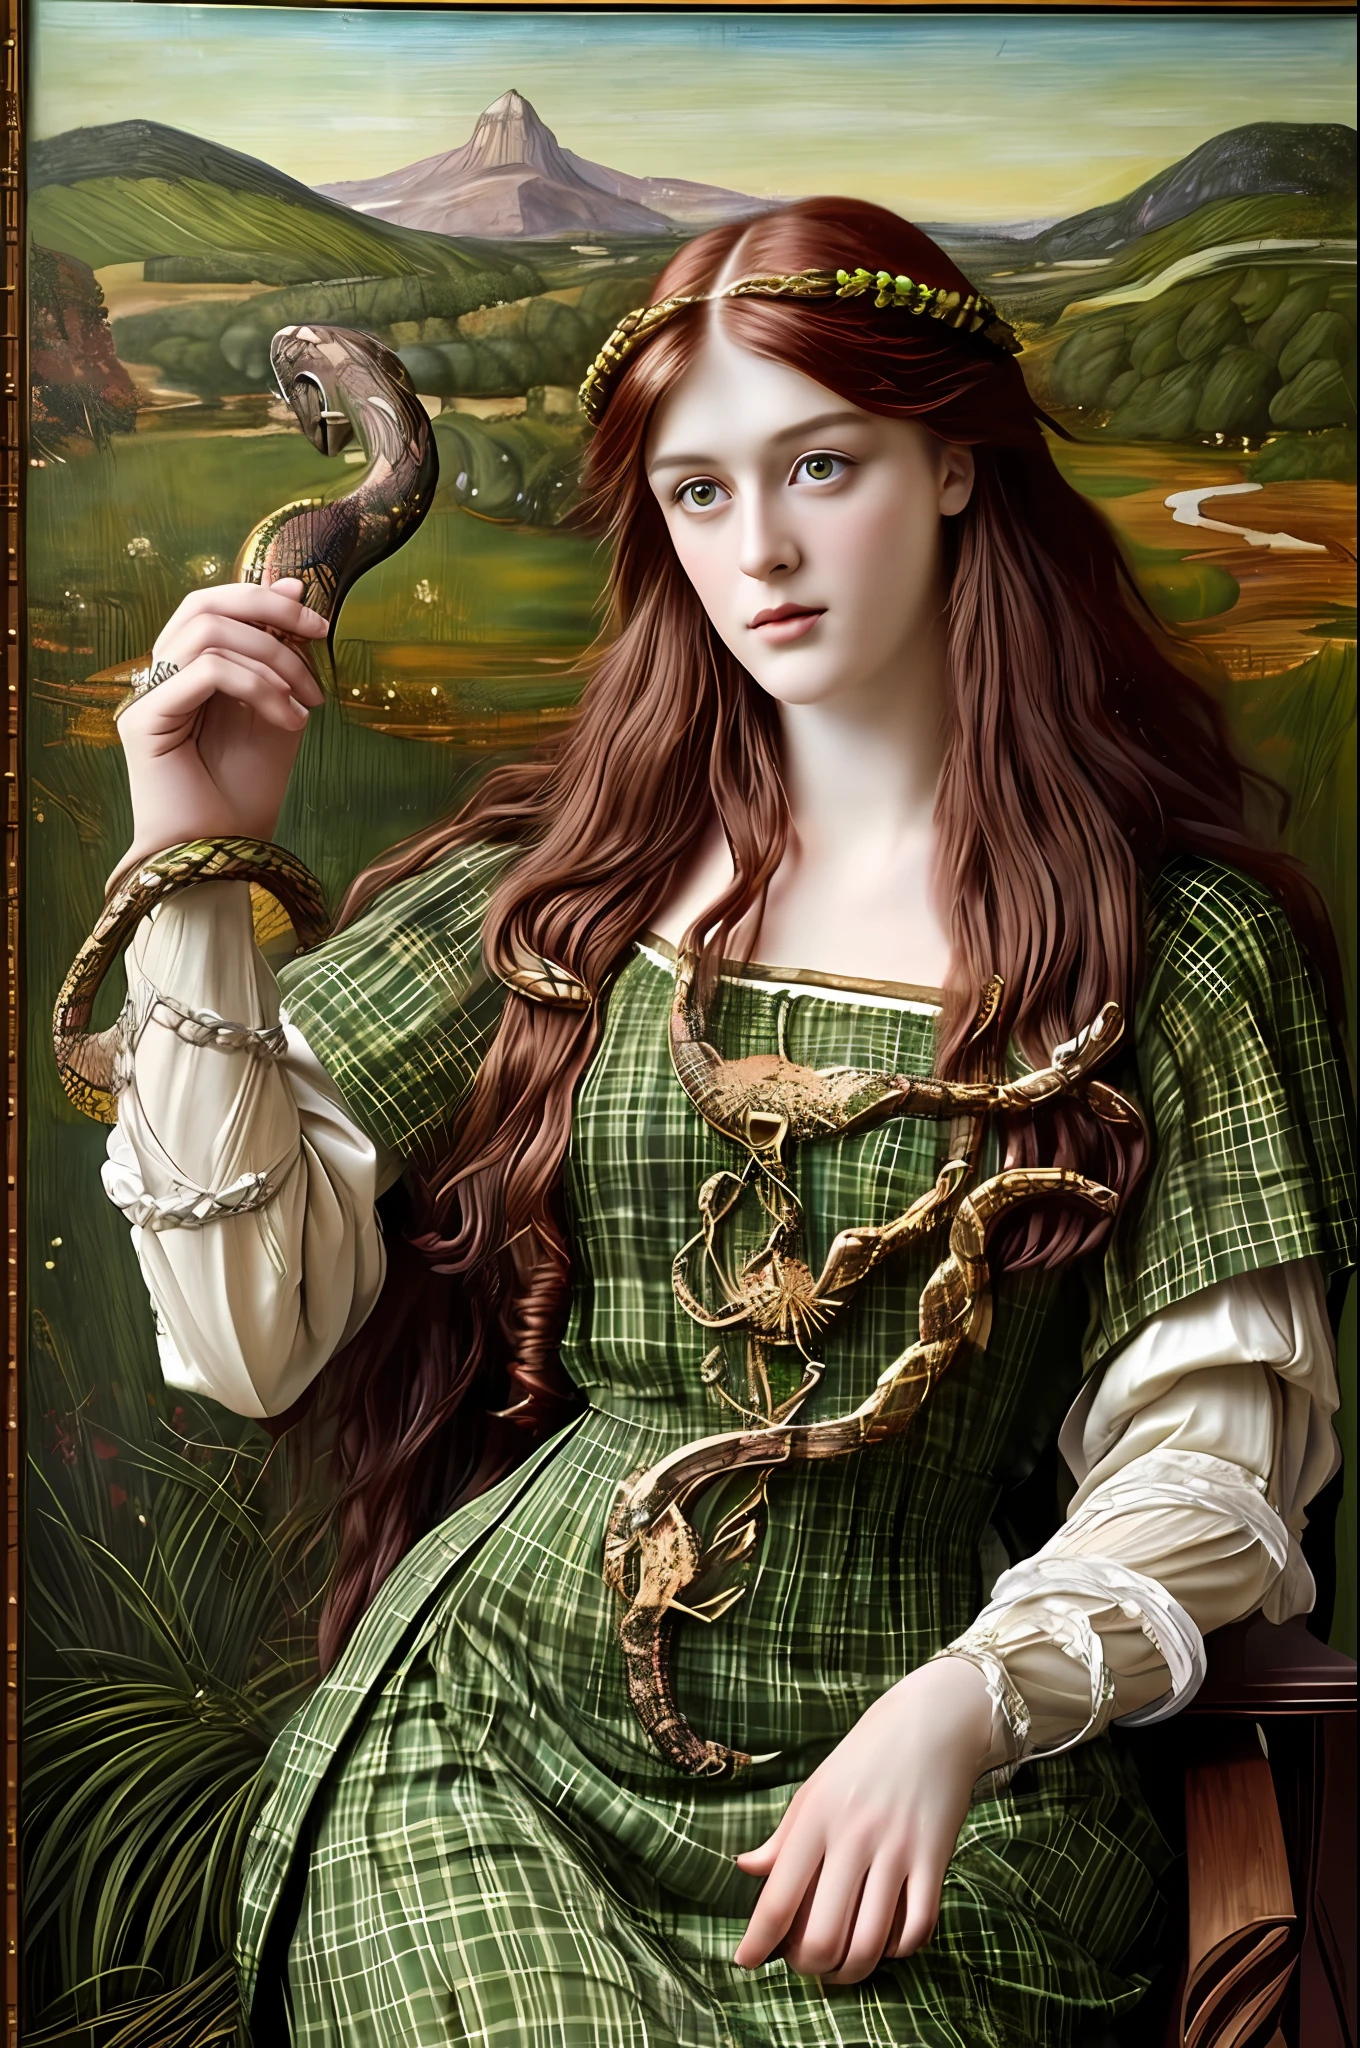 (((Живопись прерафаэлитов))) Кельтская богиня исцеления со звездой на макушке летит в небе, друид, белая клетчатая одежда, holds a змея, Кельтский стиль, Друидизм, стиль ренессанс, Осенние тона, змея, гадюка, змея, Уроборос